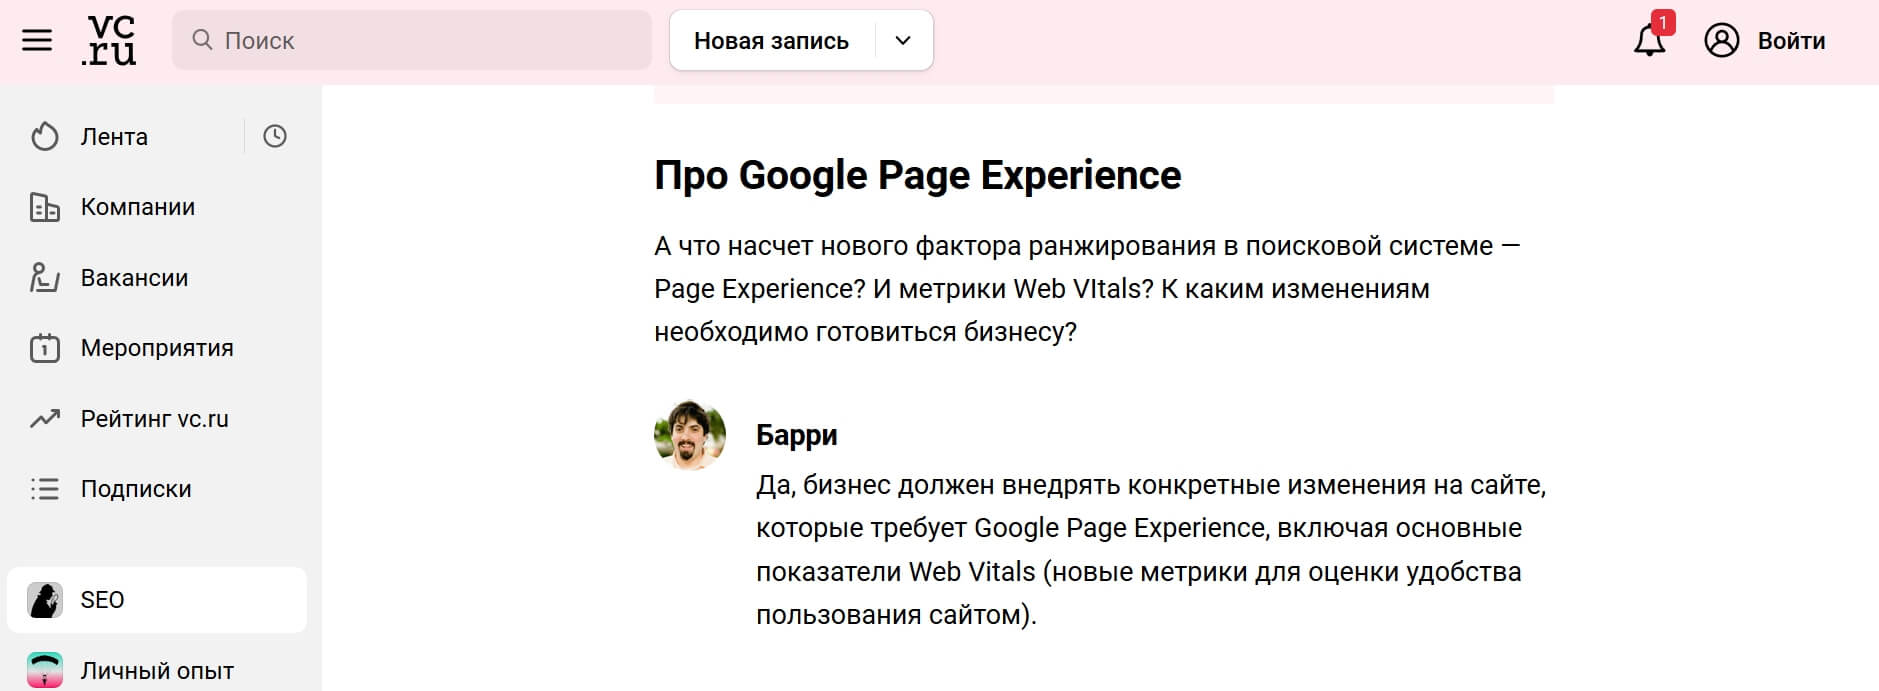 Как изменится SEO-продвижение после запуска Google Page Experience